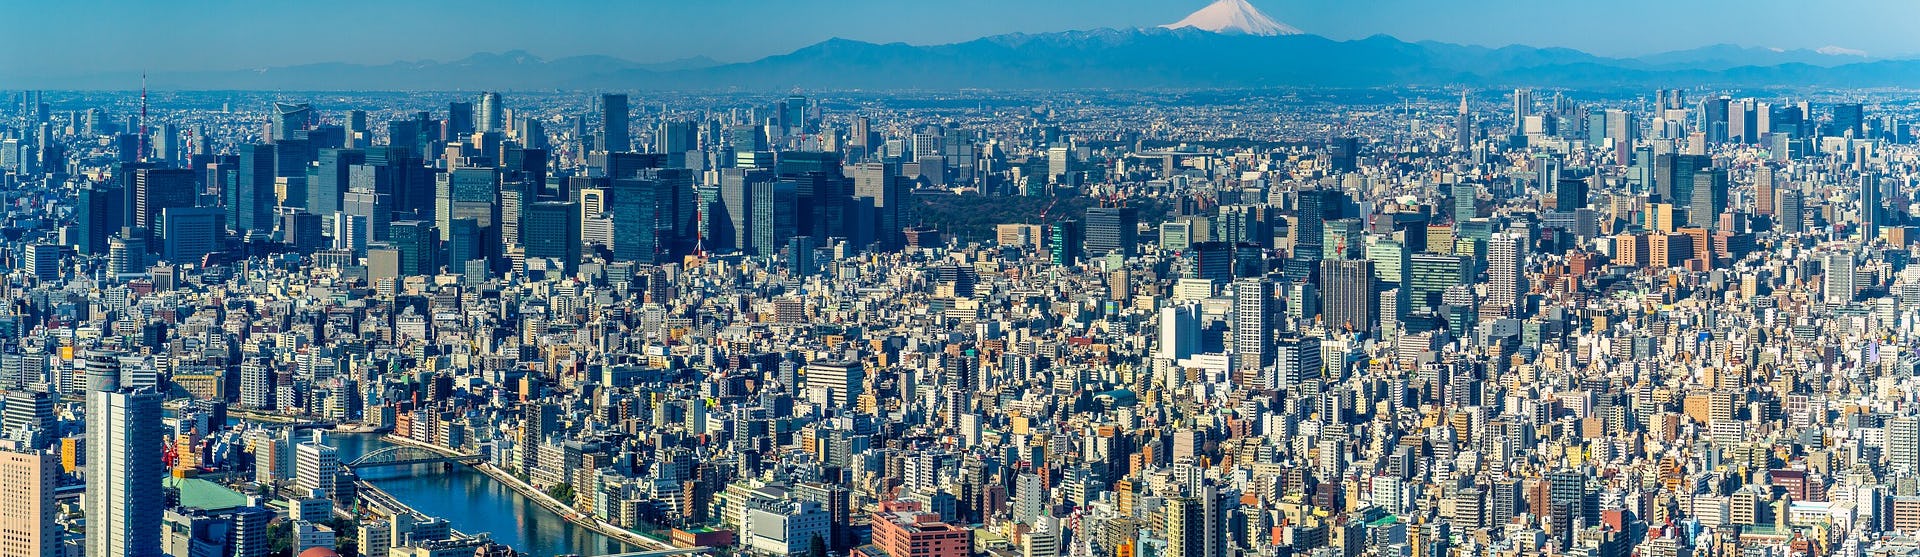 Översiktsbild tagen på Tokyo med mängder av höga byggnader och berget Fuji i bakgrunden.